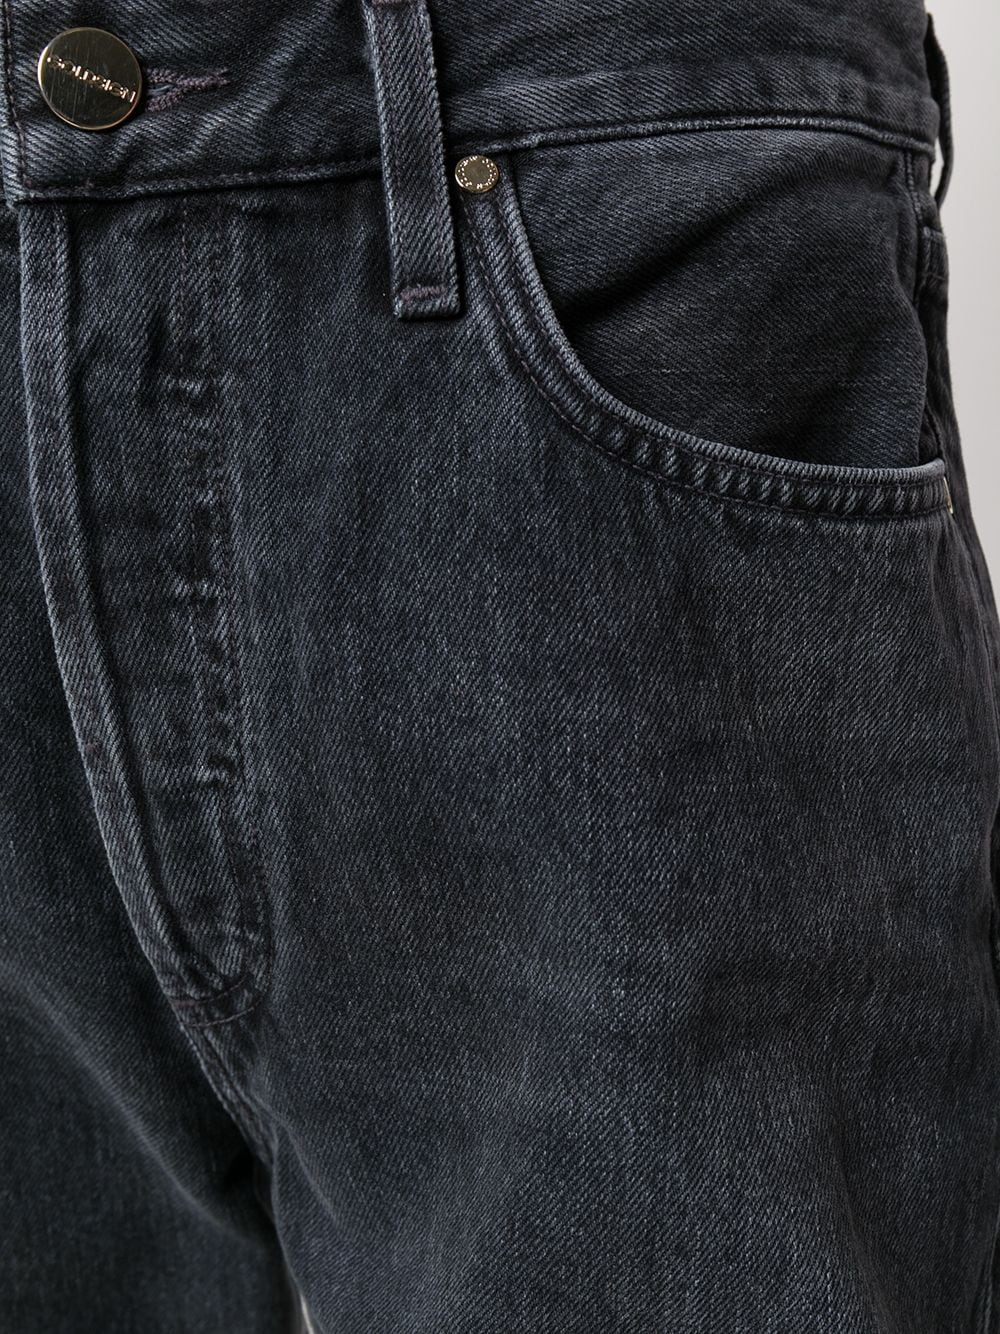 фото Goldsign укороченные джинсы прямого кроя